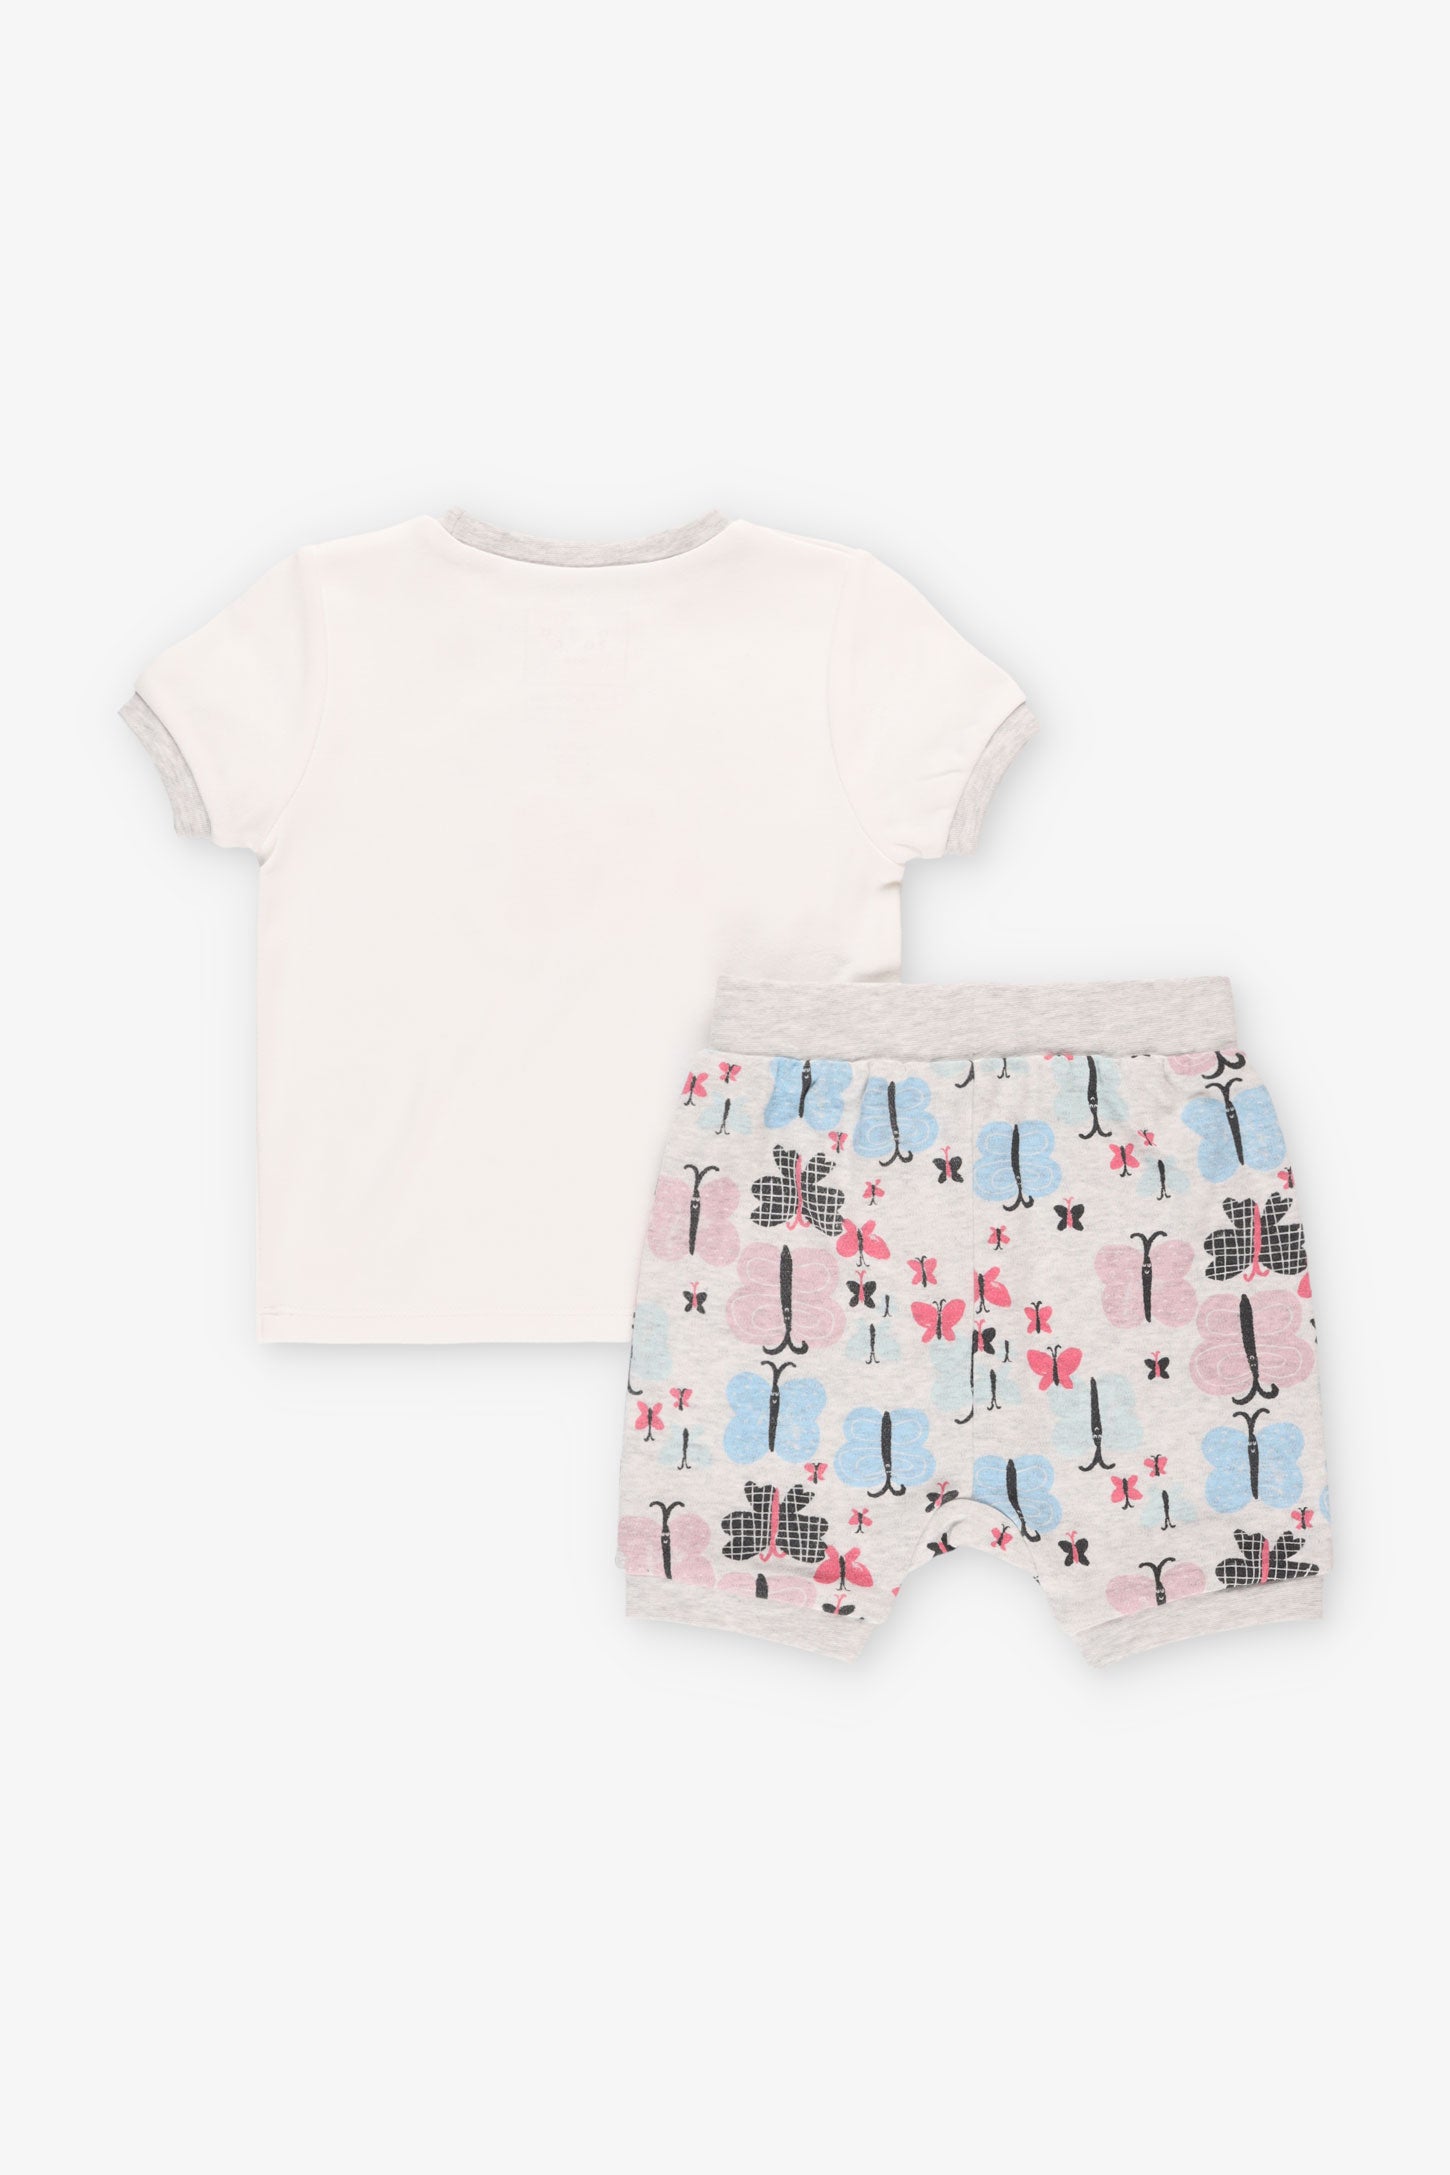 Pyjama 2-pièces en coton bio, 2T-3T - Bébé fille && BLANC